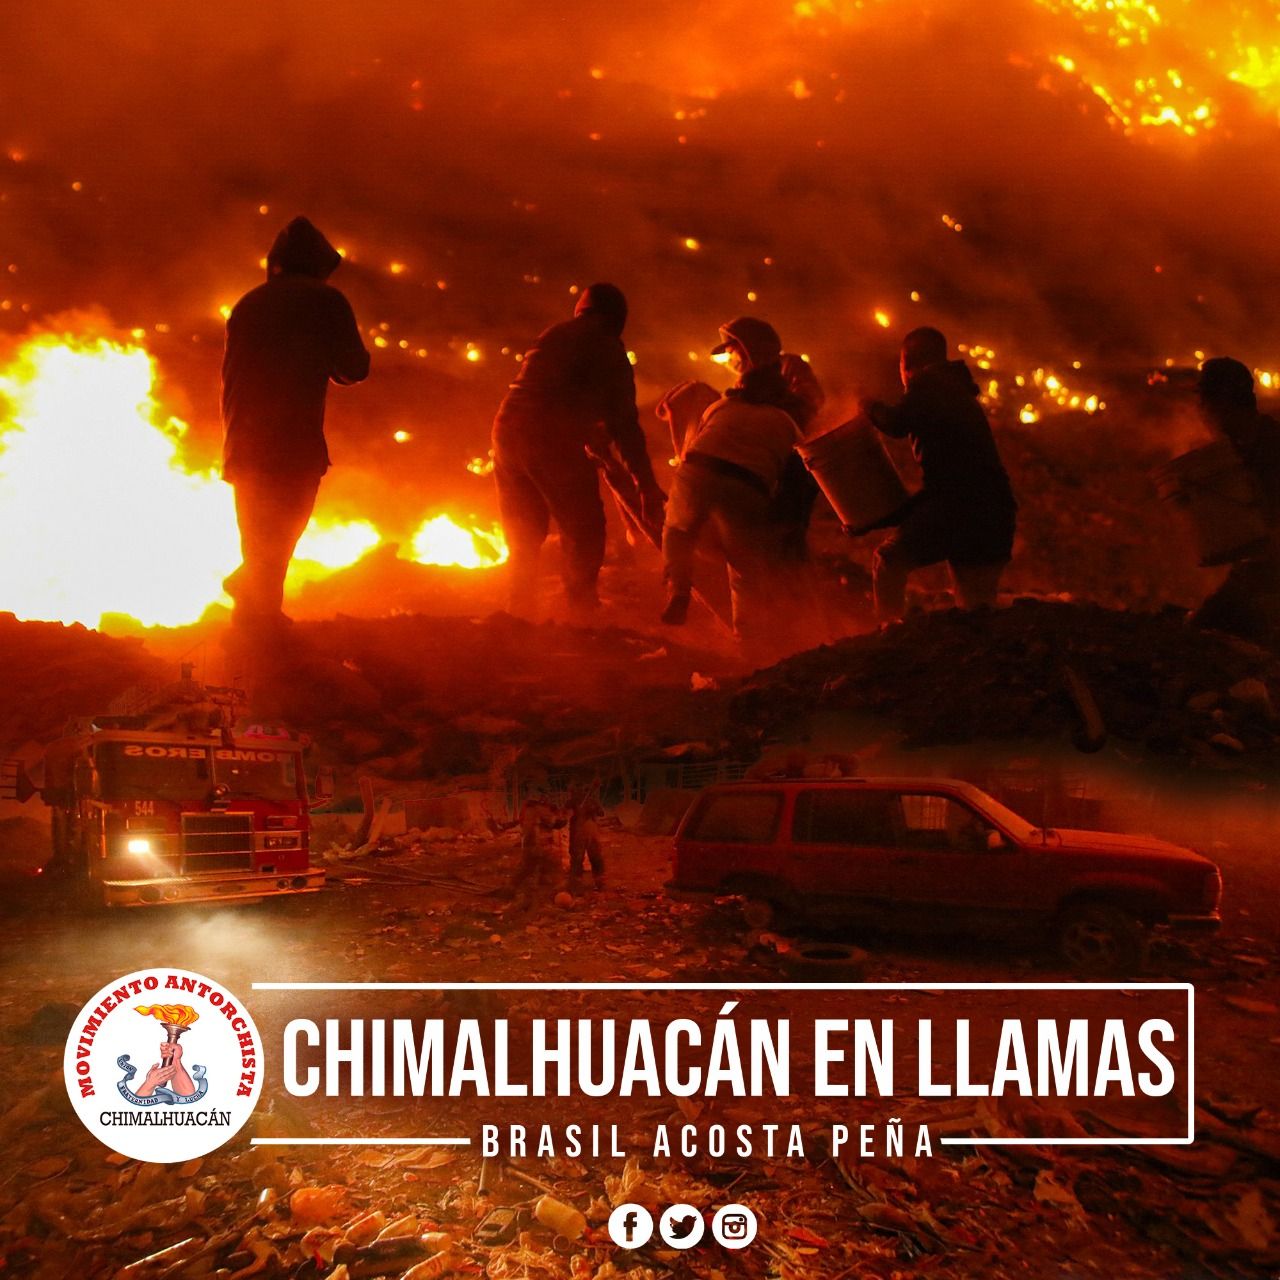 #Chimalhuacán en llamas